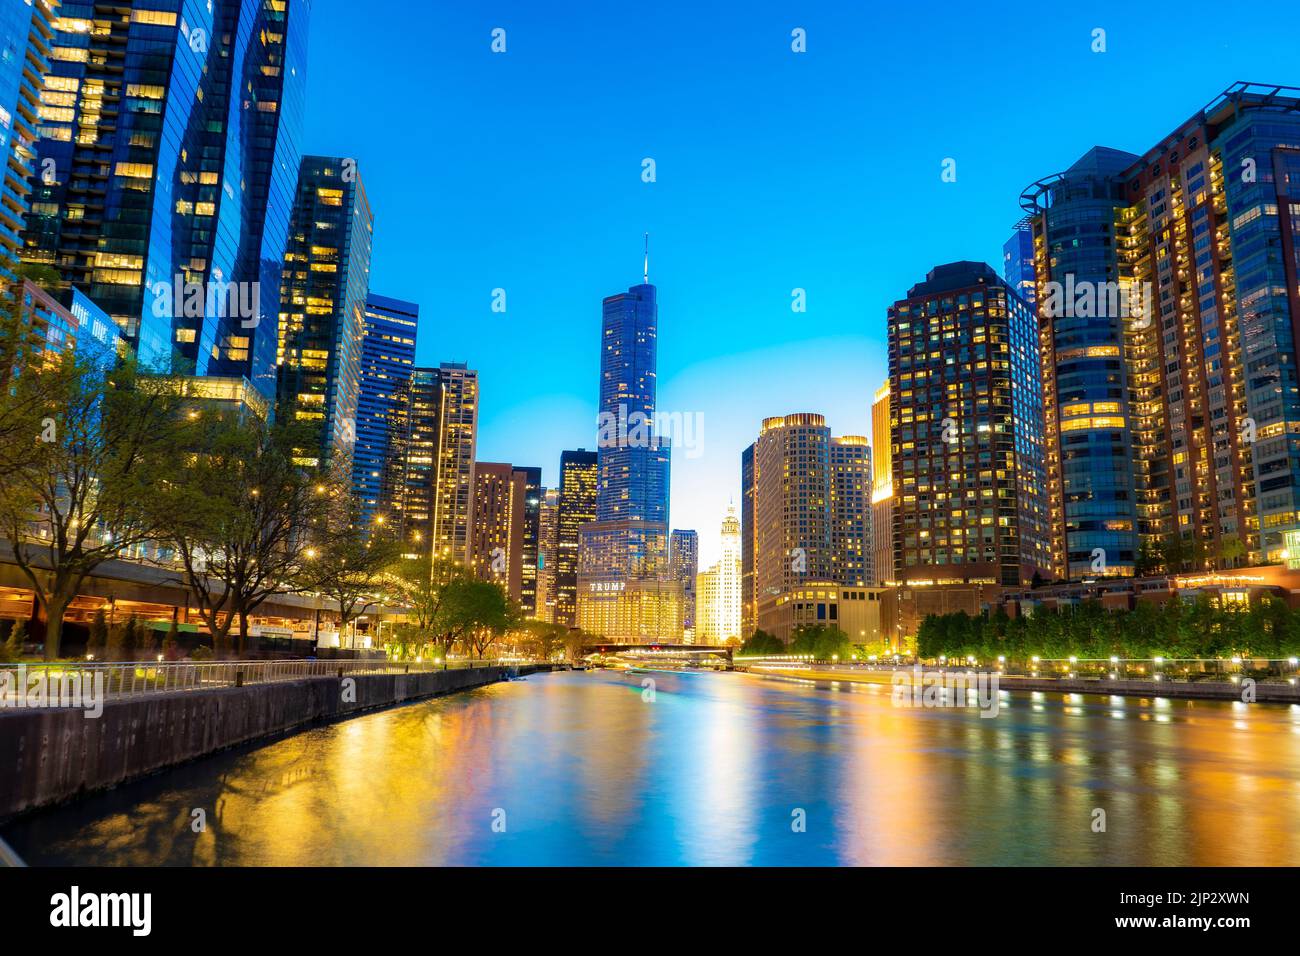 Gli edifici illuminati sulla riva del fiume in serata. Chicago, Stati Uniti. Foto Stock